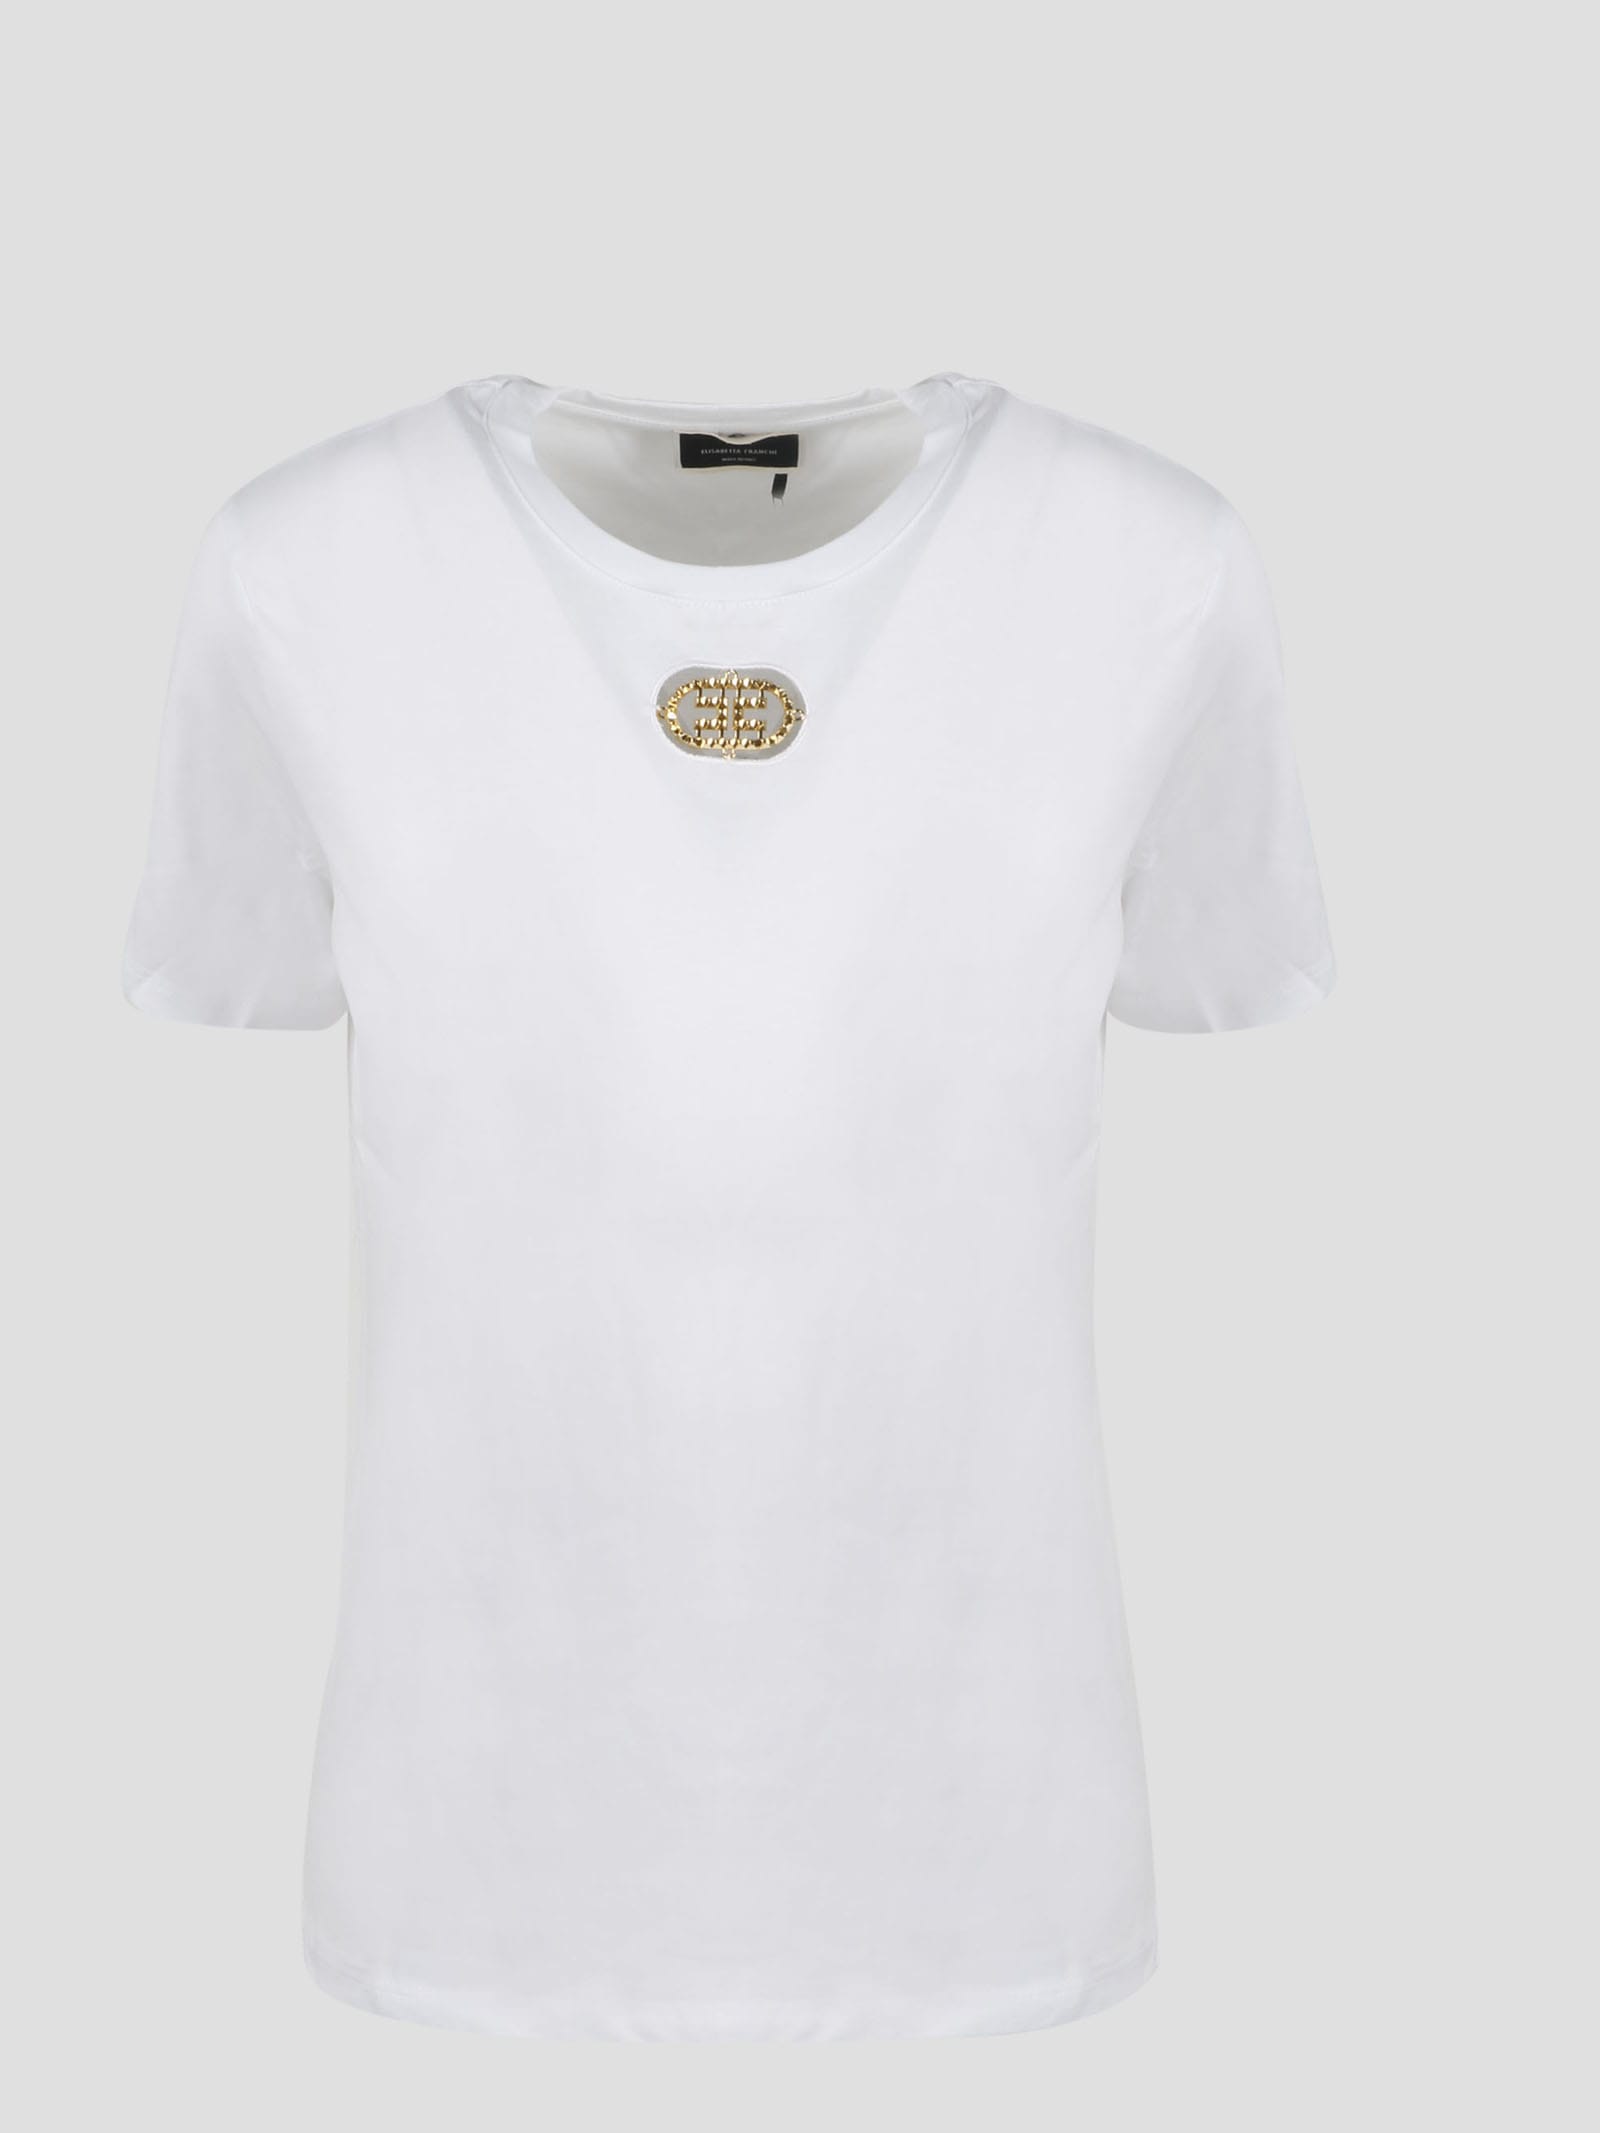 Elisabetta Franchi gold porthole t-shirt